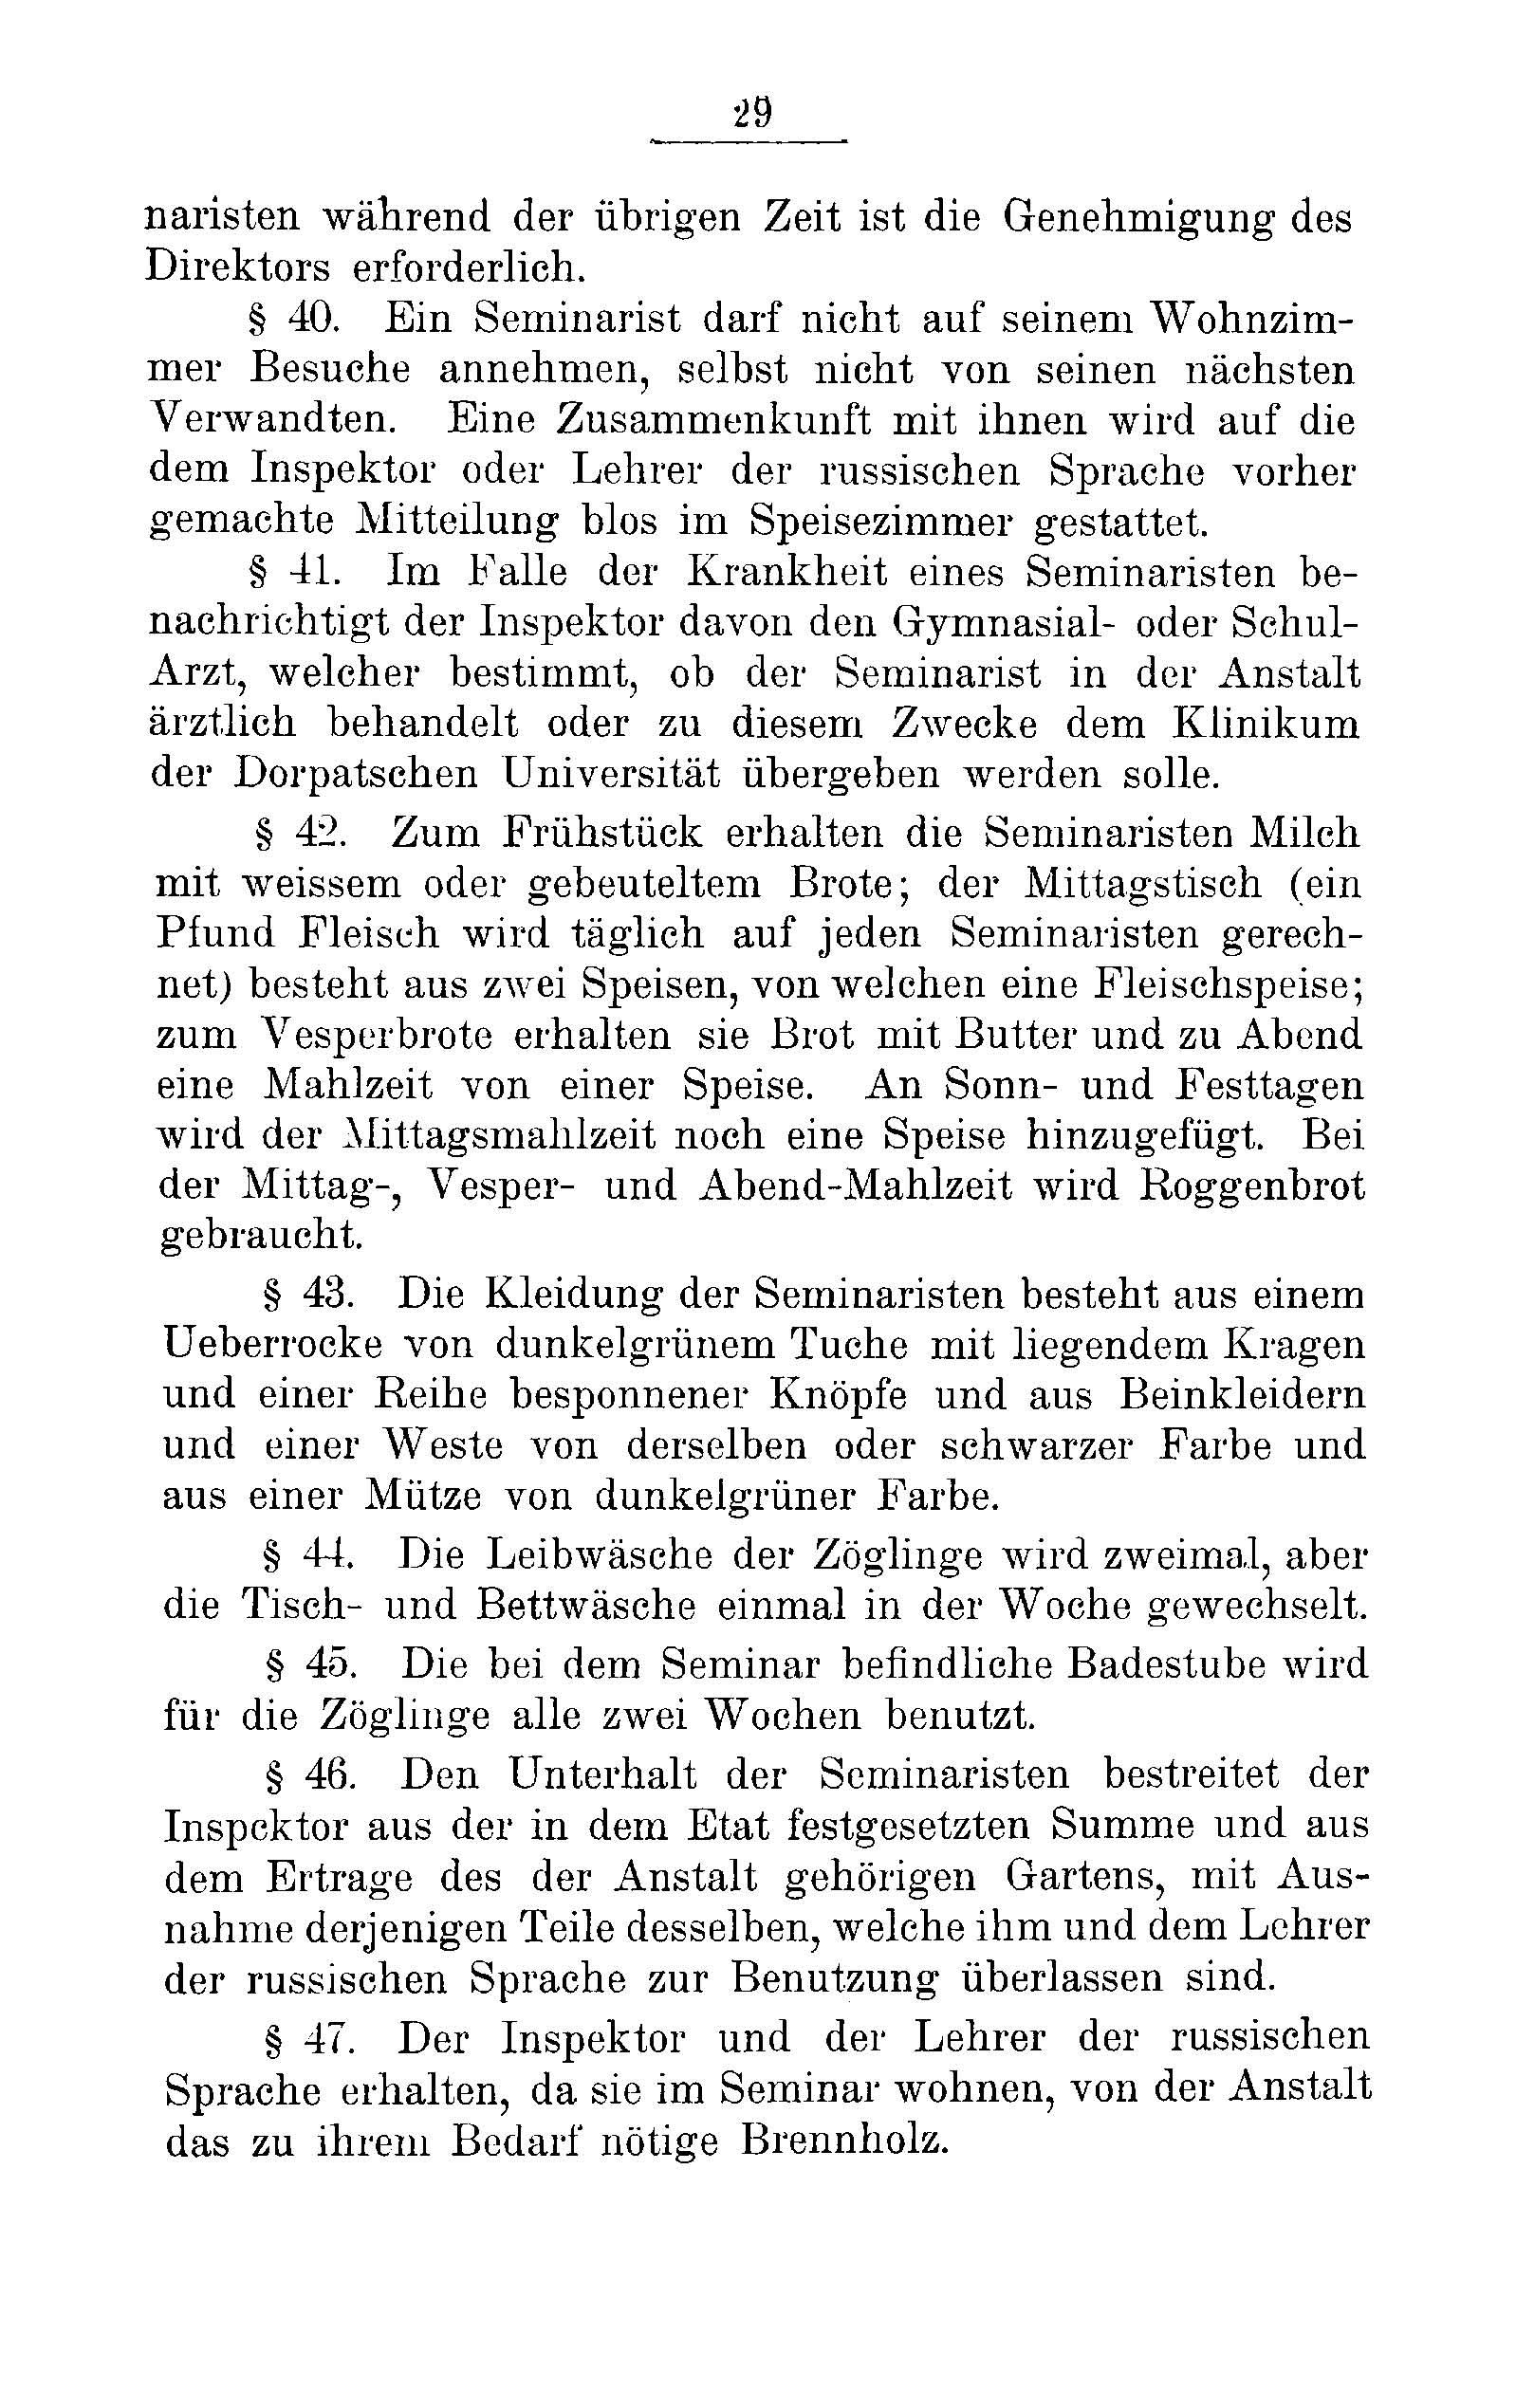 Das Erste Dorpatsche Lehrer-Seminar (1890) | 31. Main body of text